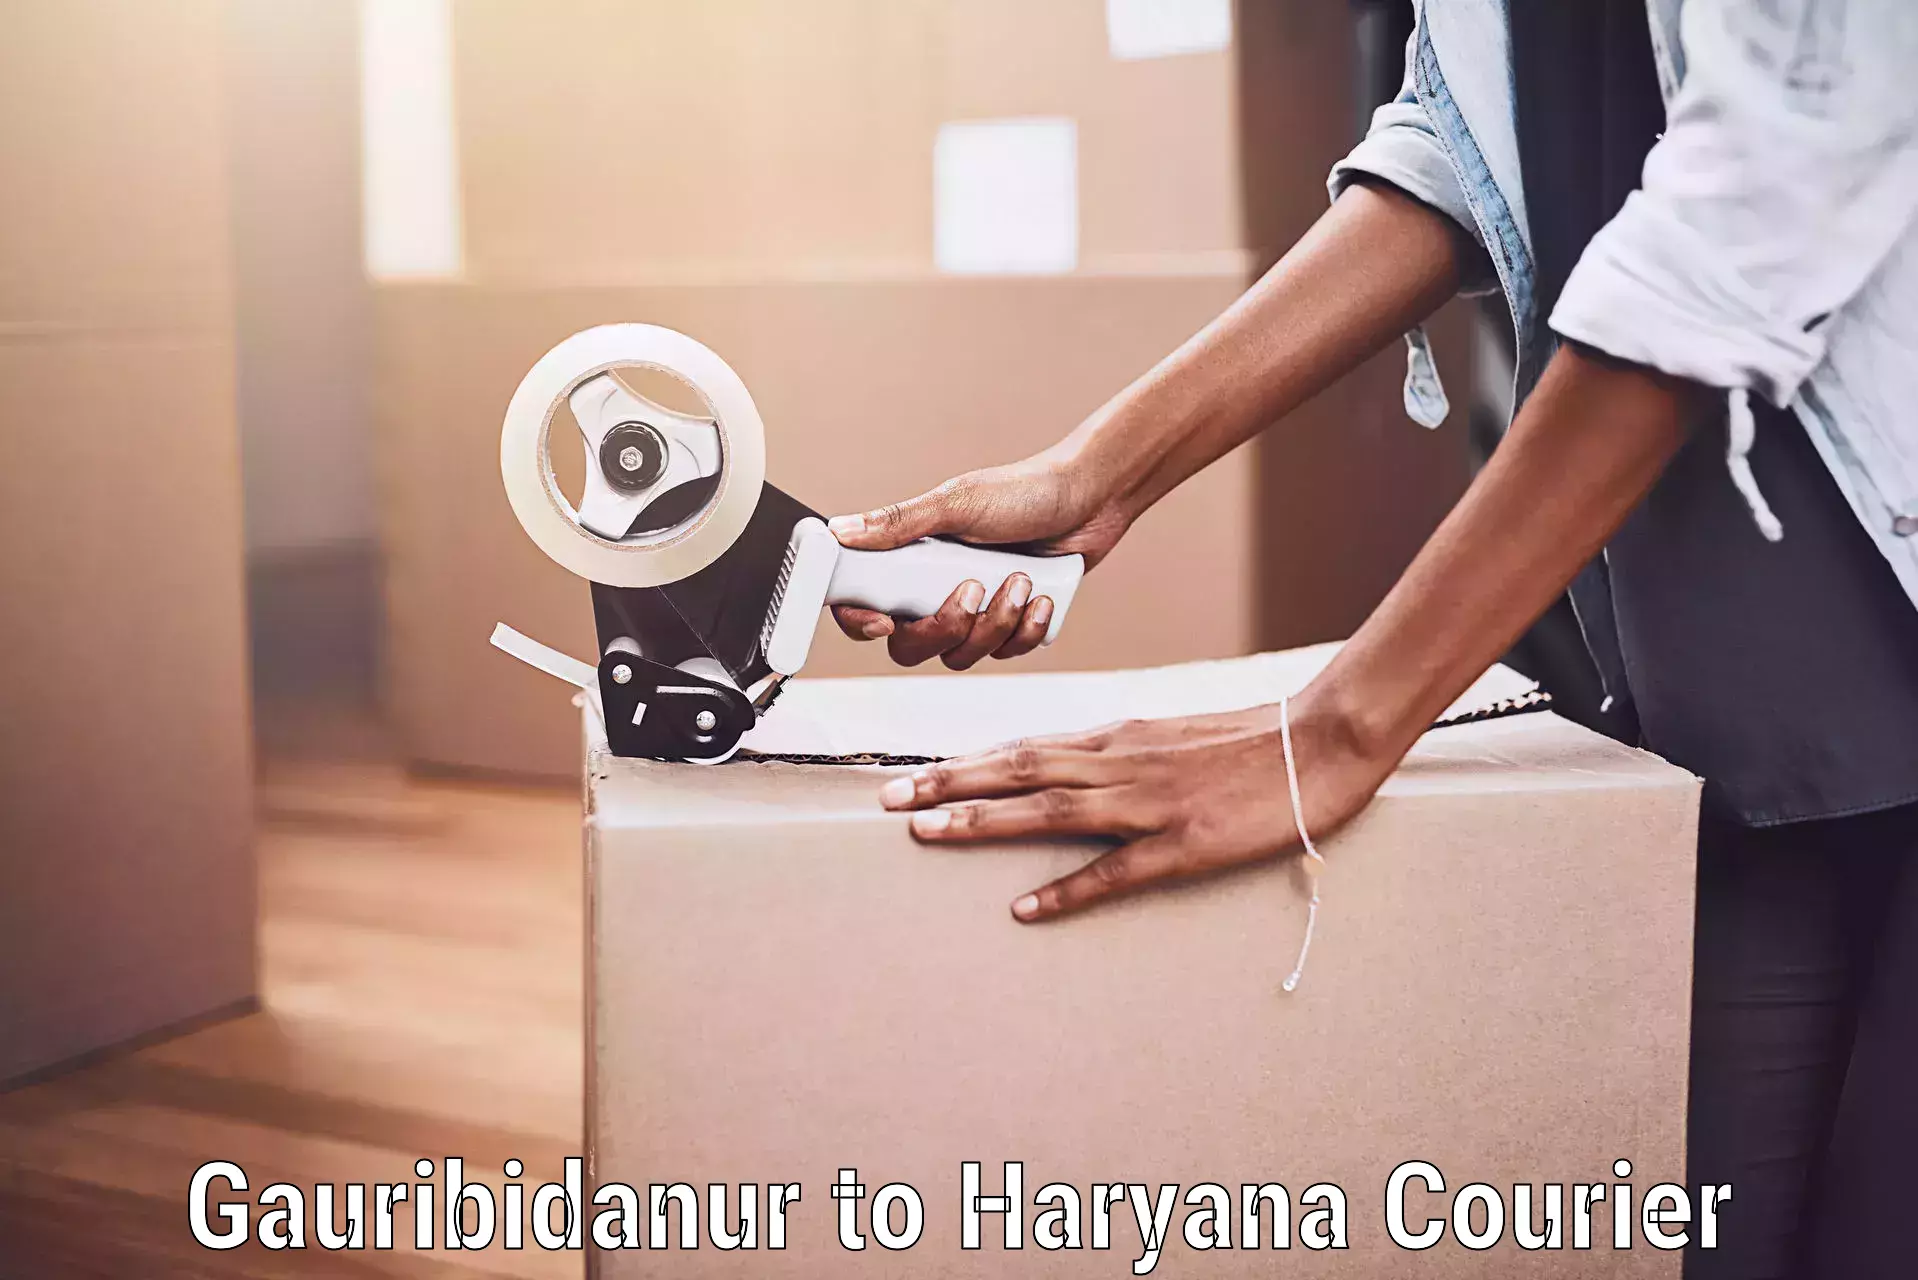 Baggage shipping service Gauribidanur to Haryana